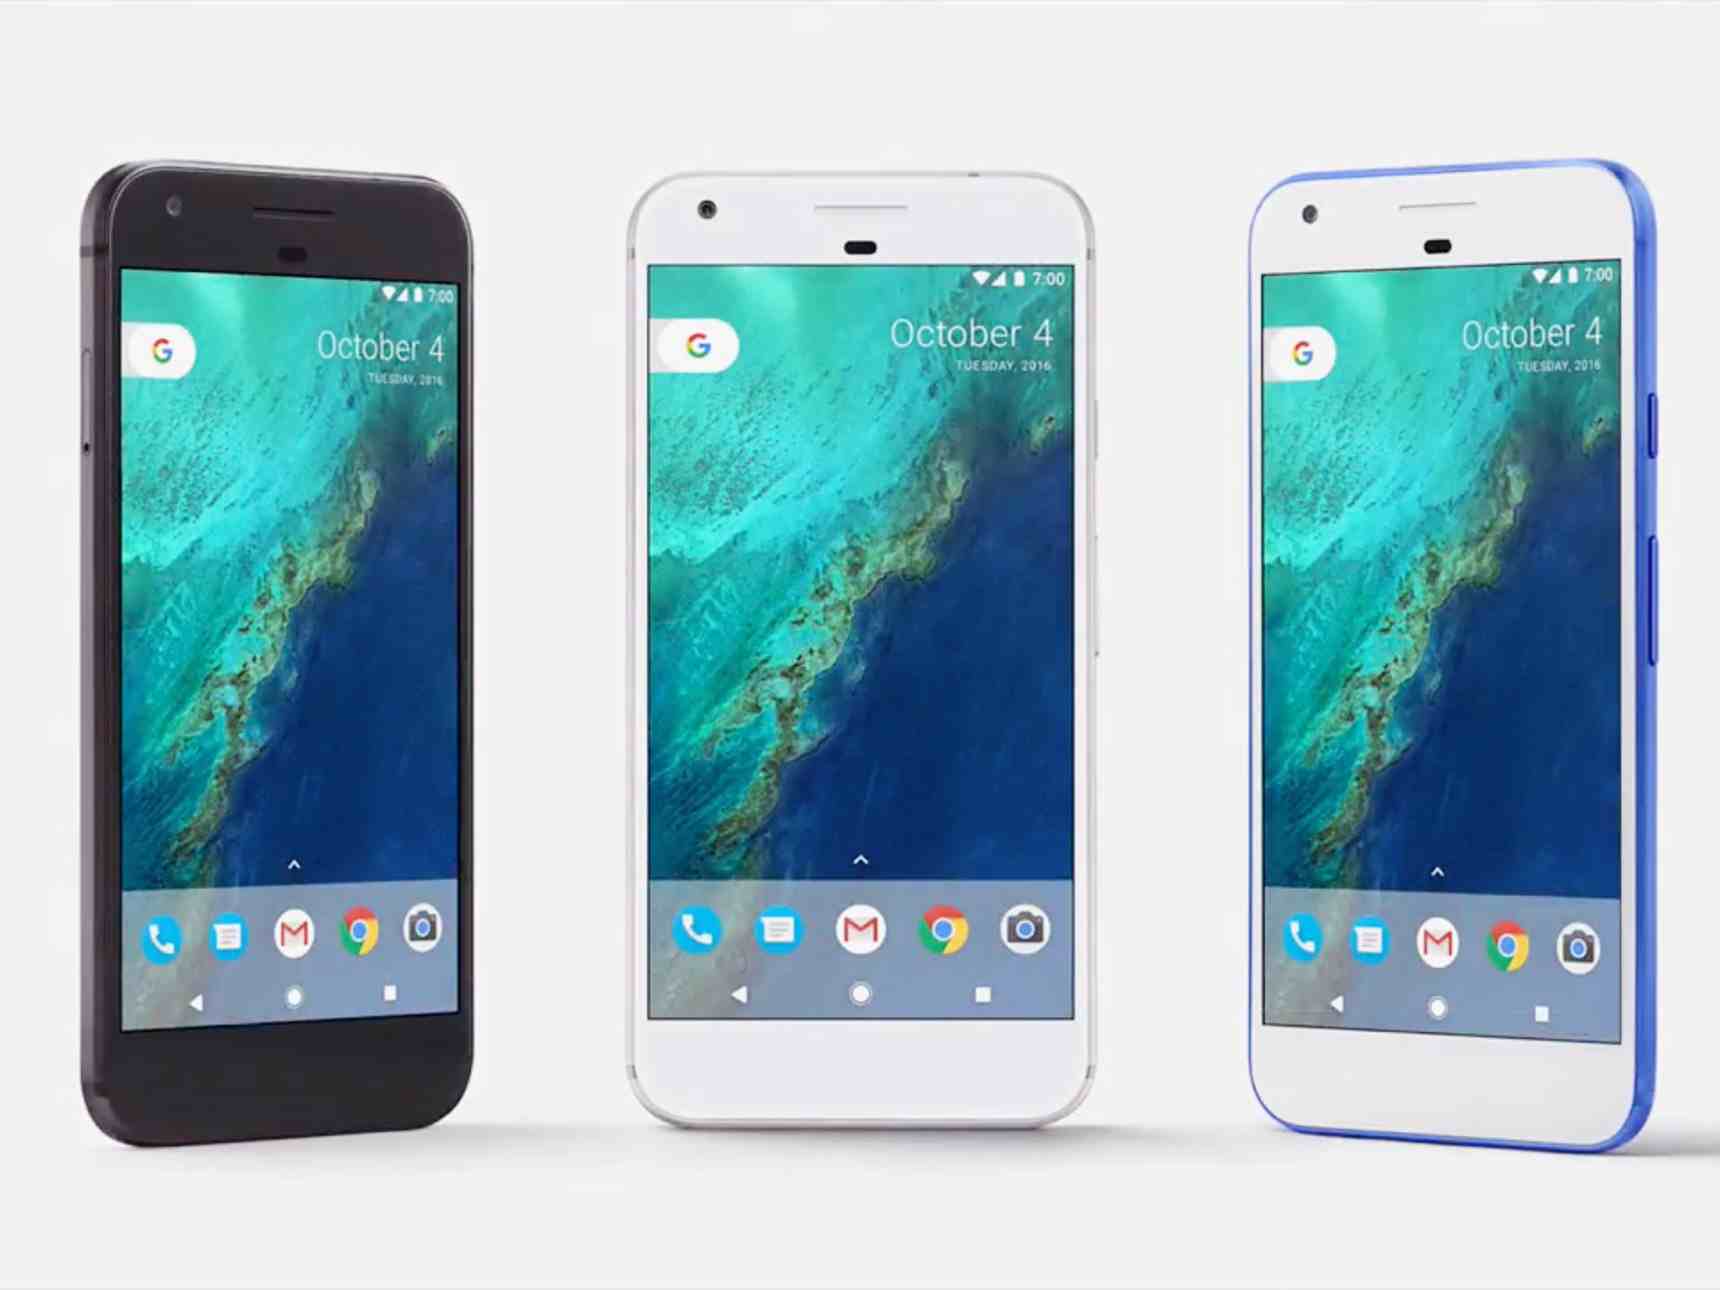 هاتف "جوجل بيكسل" الجديد ونظام أندرويد 7.1 به مشاكل في الاتصال بالسيارات Android 3